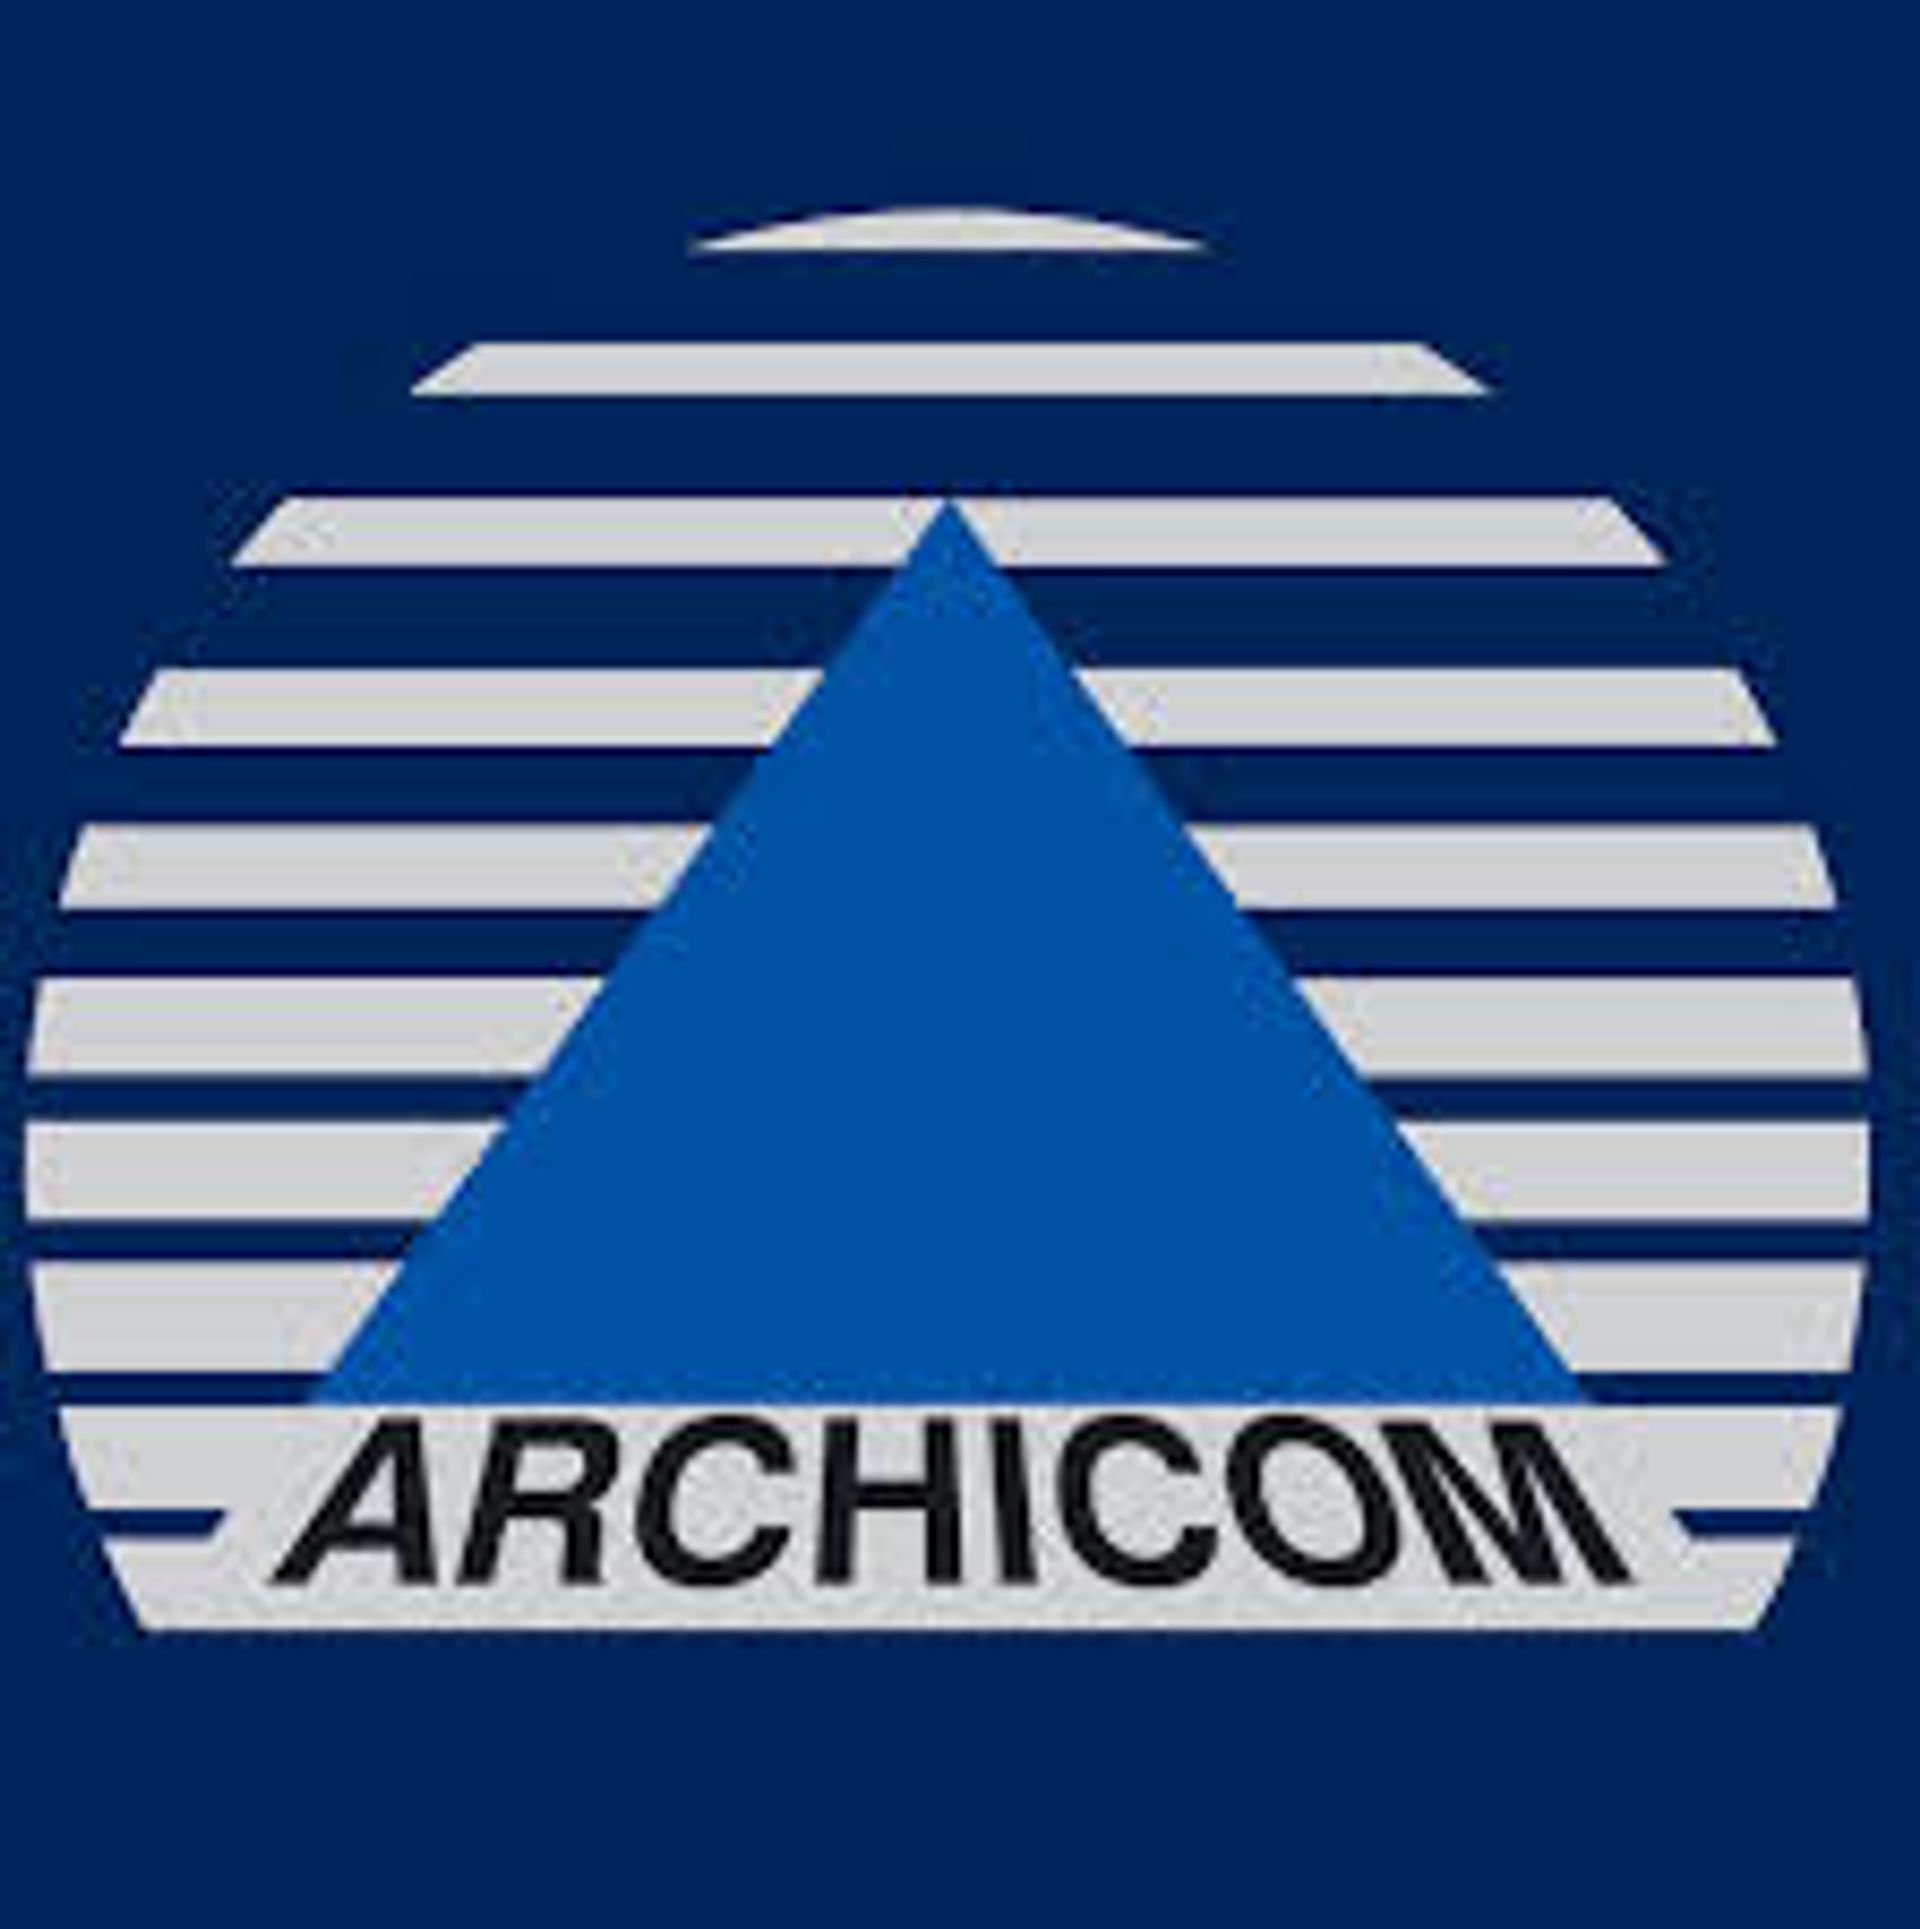  Grupa Archicom publikuje wyniki za I kwartał 2016 r.